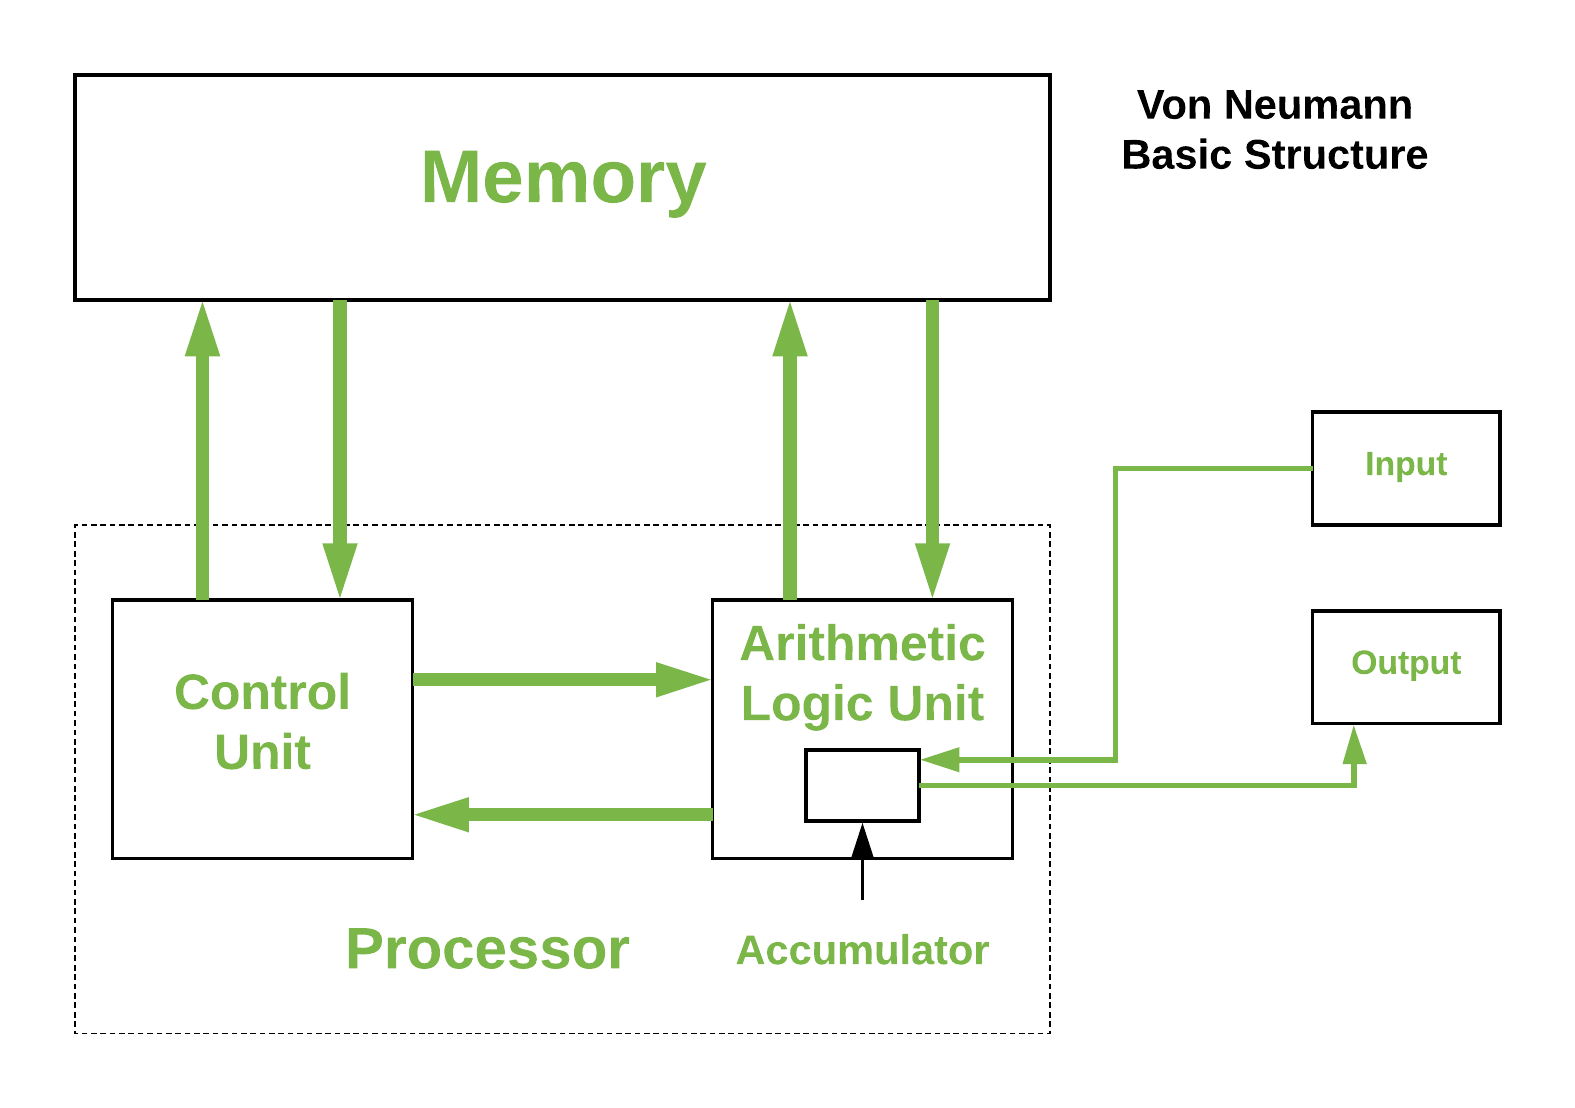 Arquitectura Von-Neumann